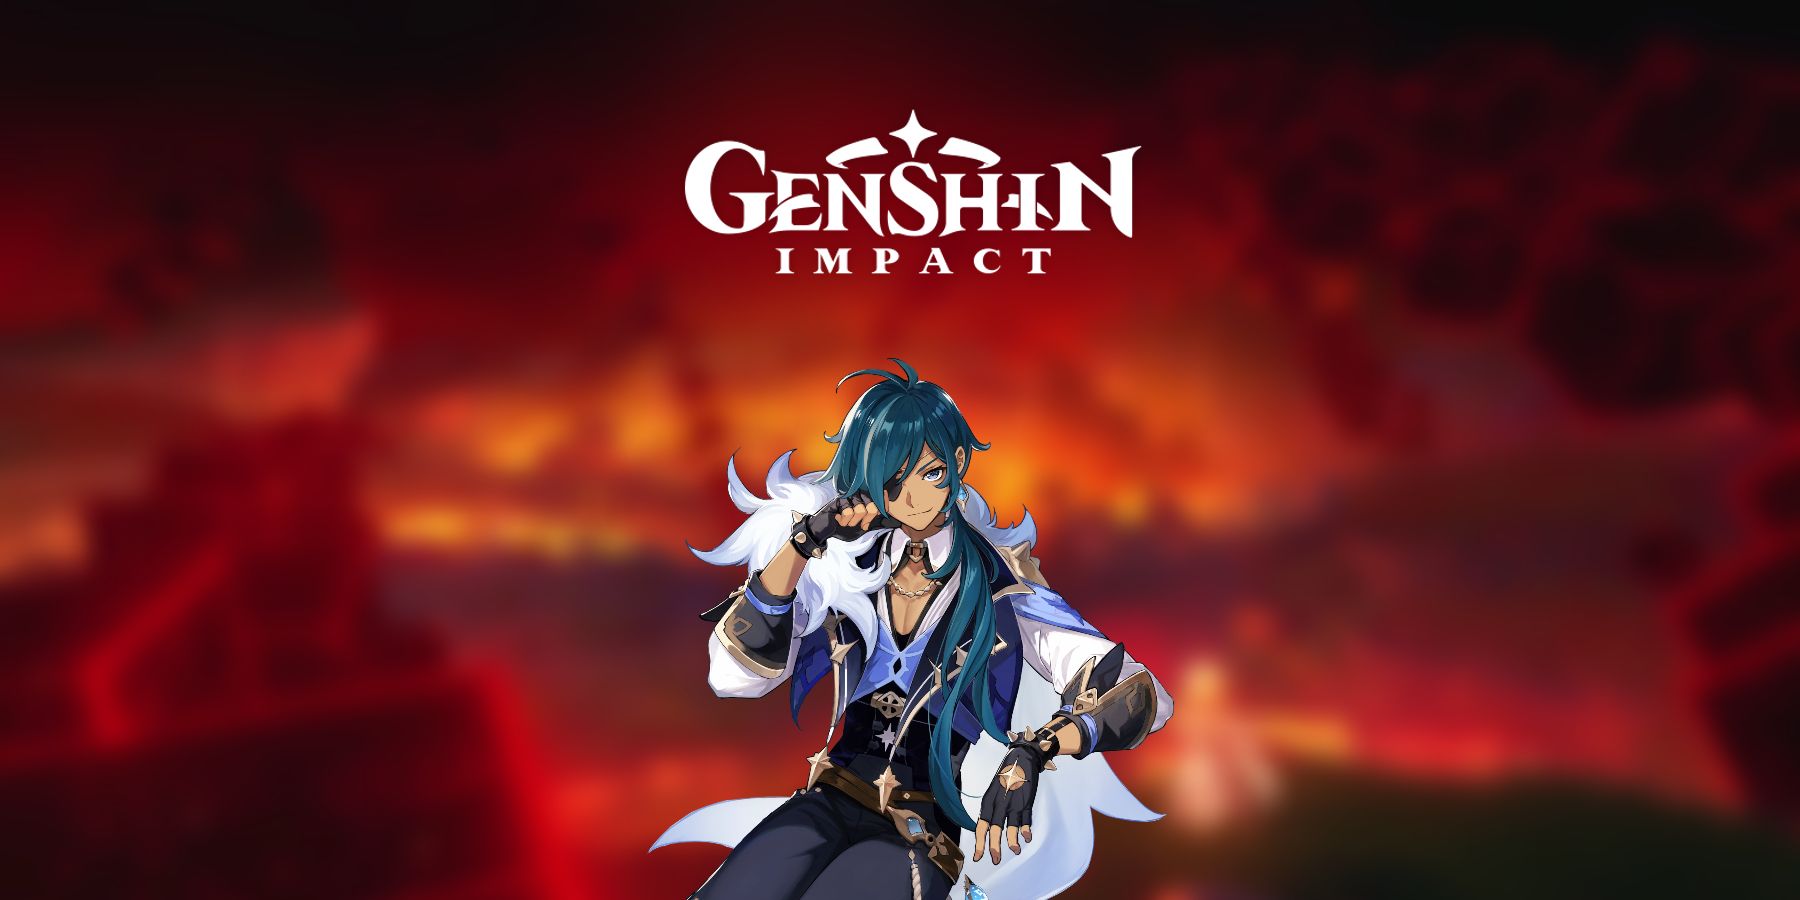 Impacto de Genshin: Kaeya vem de uma terra sem um deus